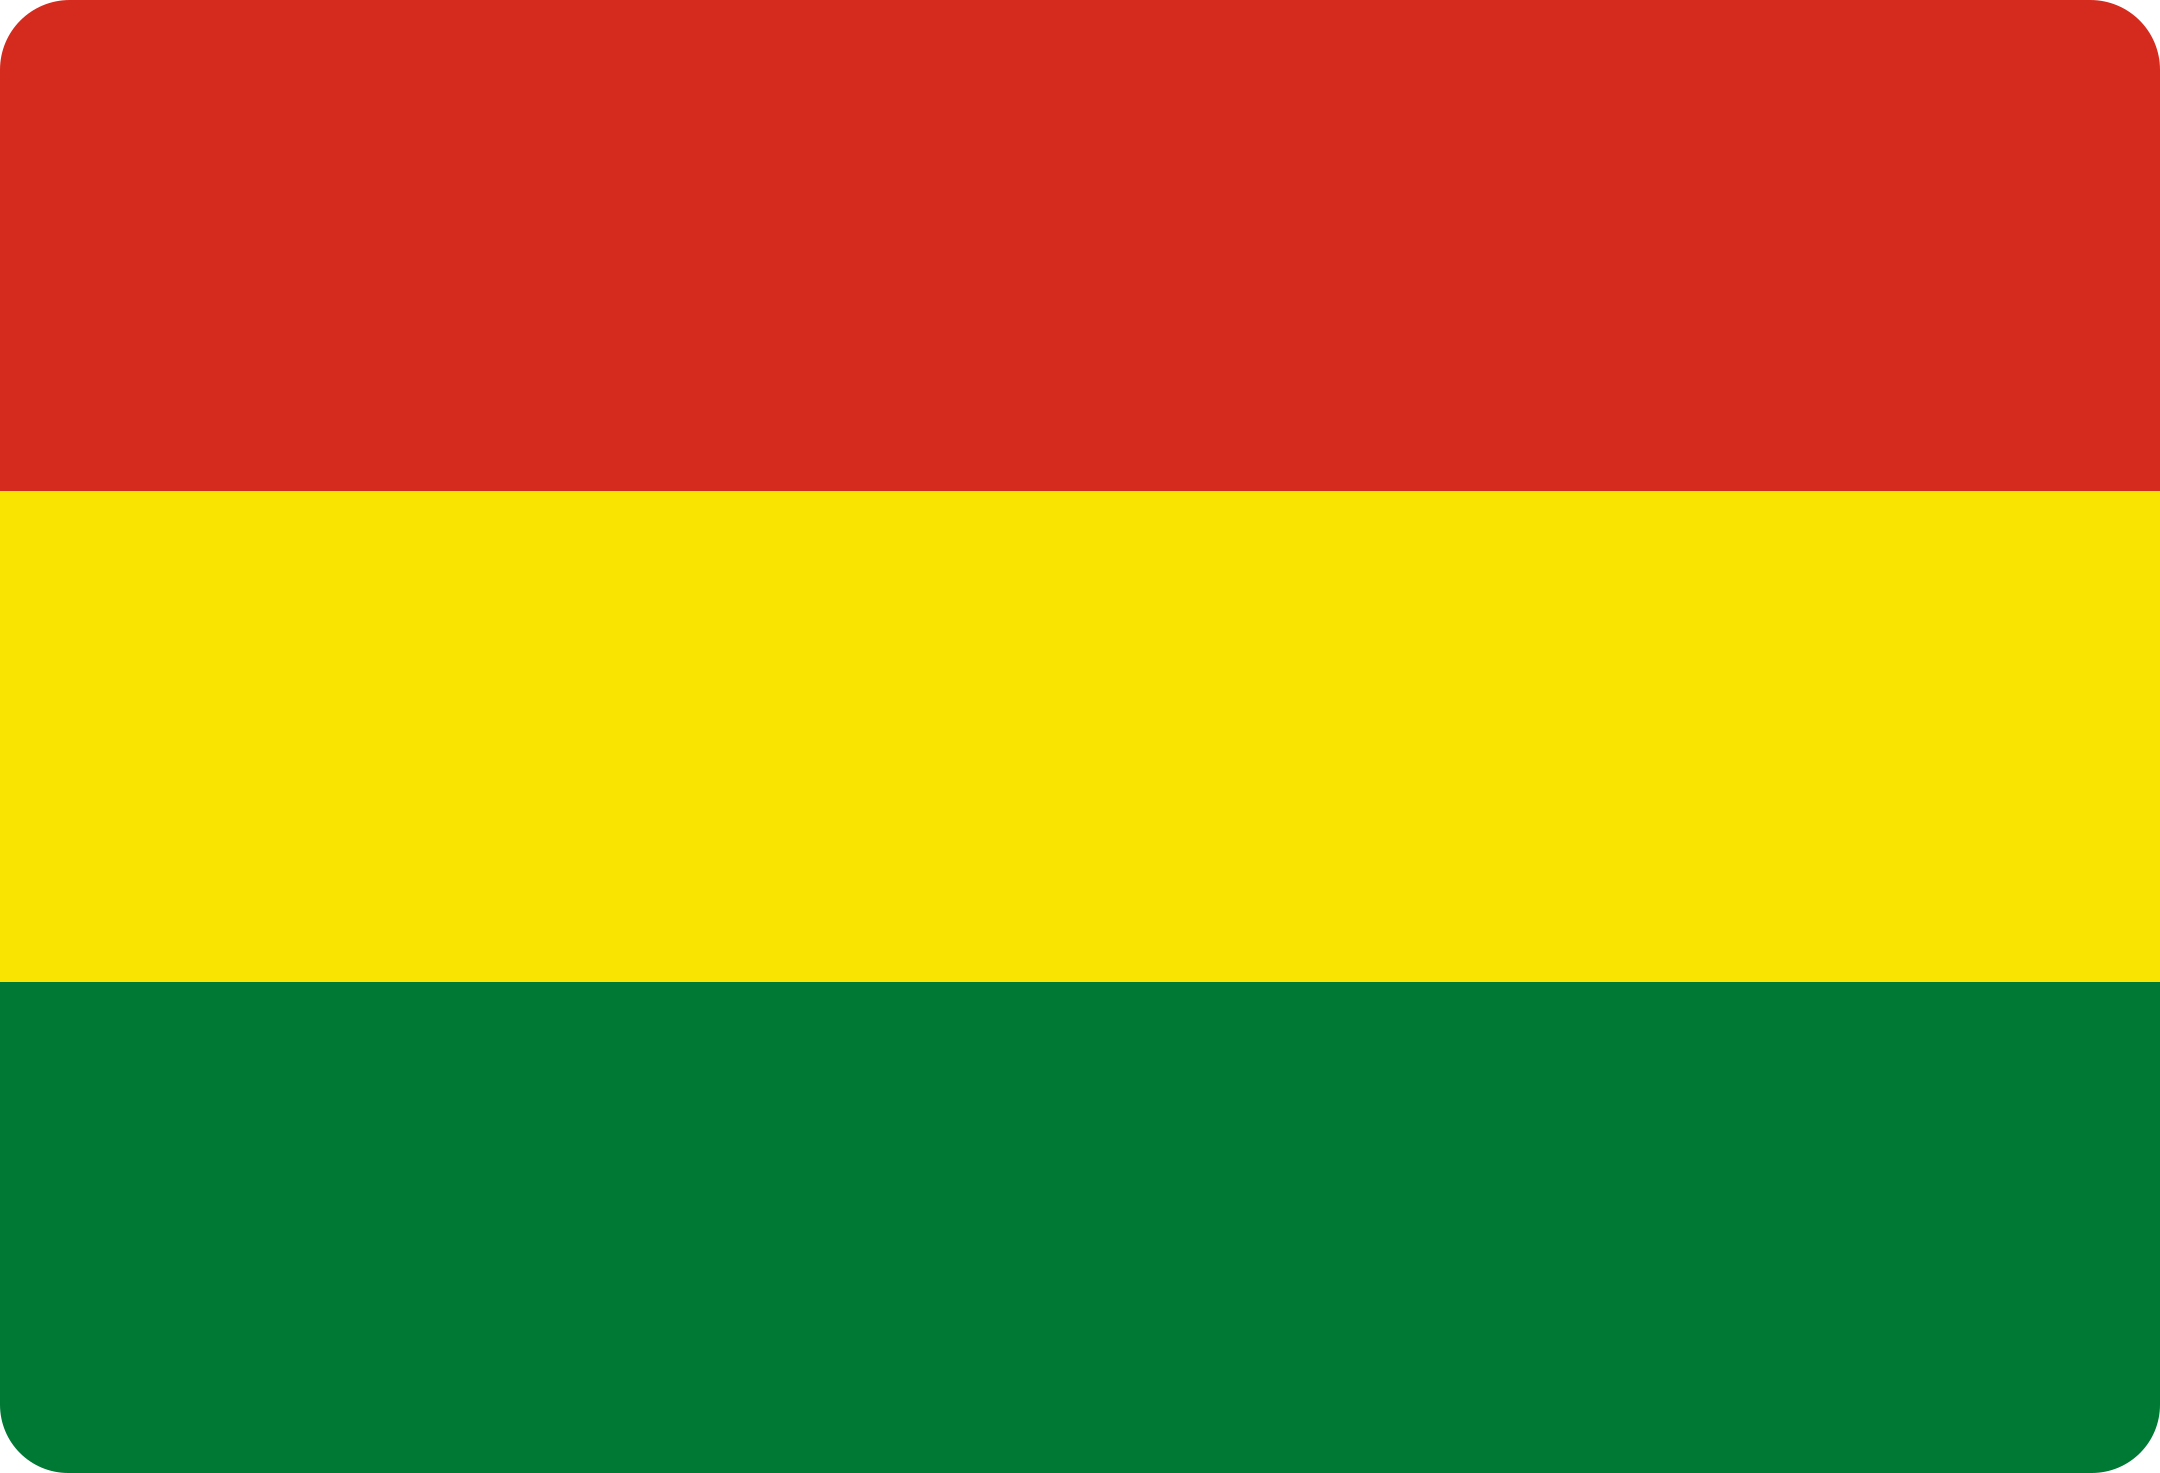 bandeira bolivia flag 1 - Flag of Bolivia